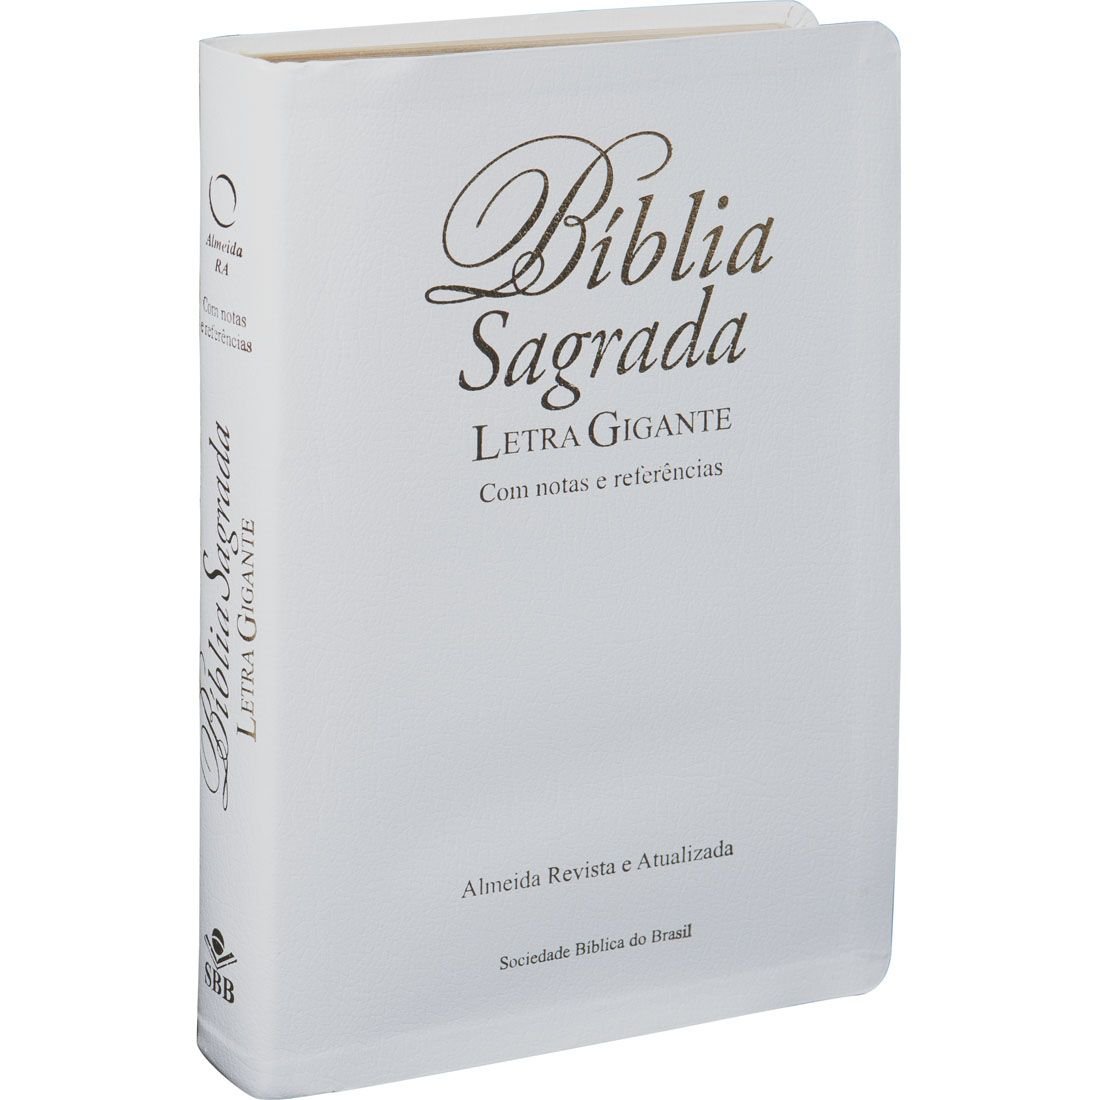 Bíblia Sagrada Letra Gigante com índice e zíper - Couro sintético Preto:  Almeida Revista e Atualizada (ARA)